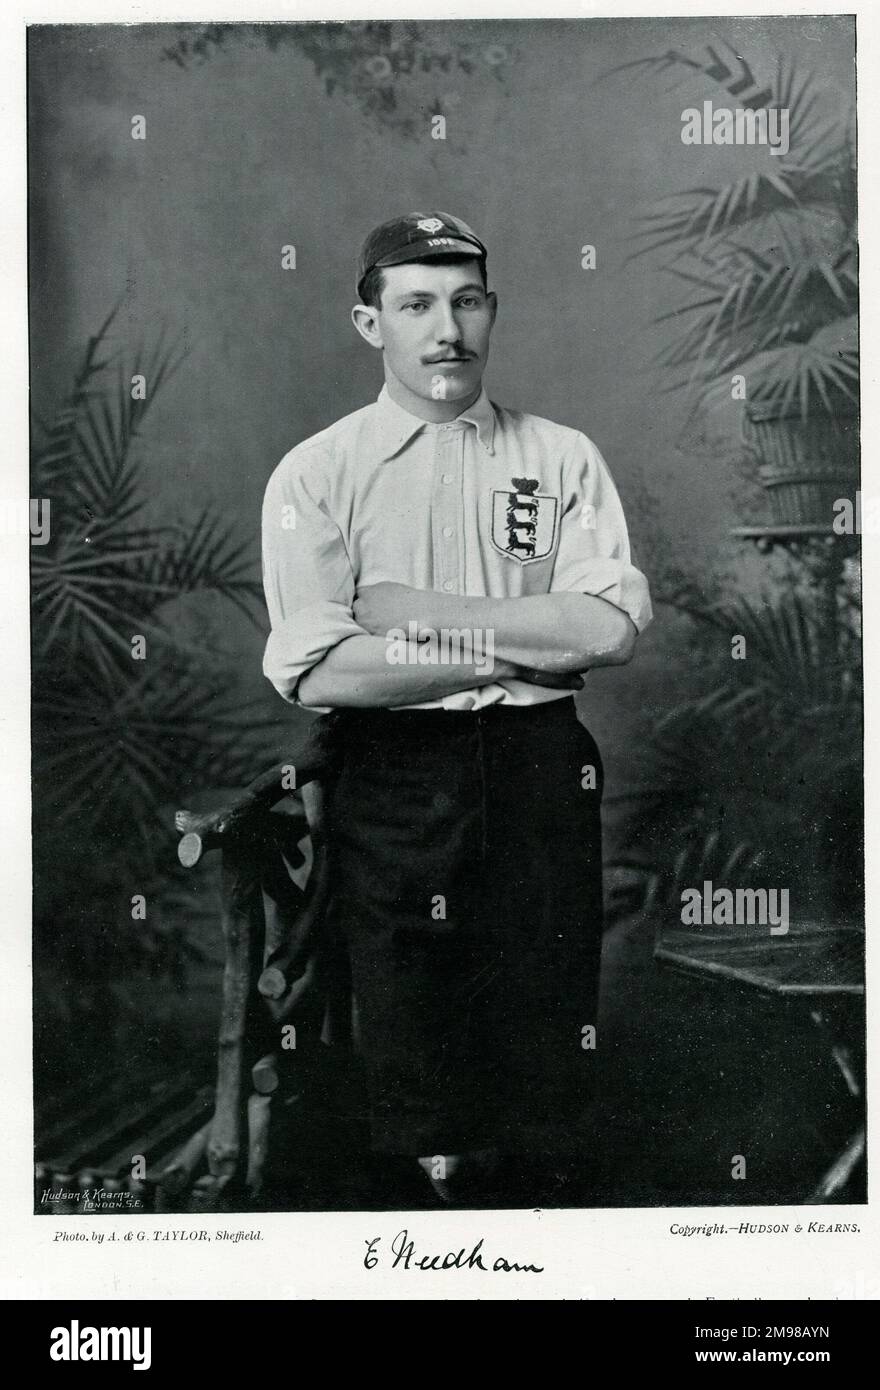 Ernest „Nudger“ Needham (1873-1936), englischer Fußballer und Cricketspieler. Er spielte Fußball für Sheffield United und England und wurde 1901 Kapitän von England. Stockfoto